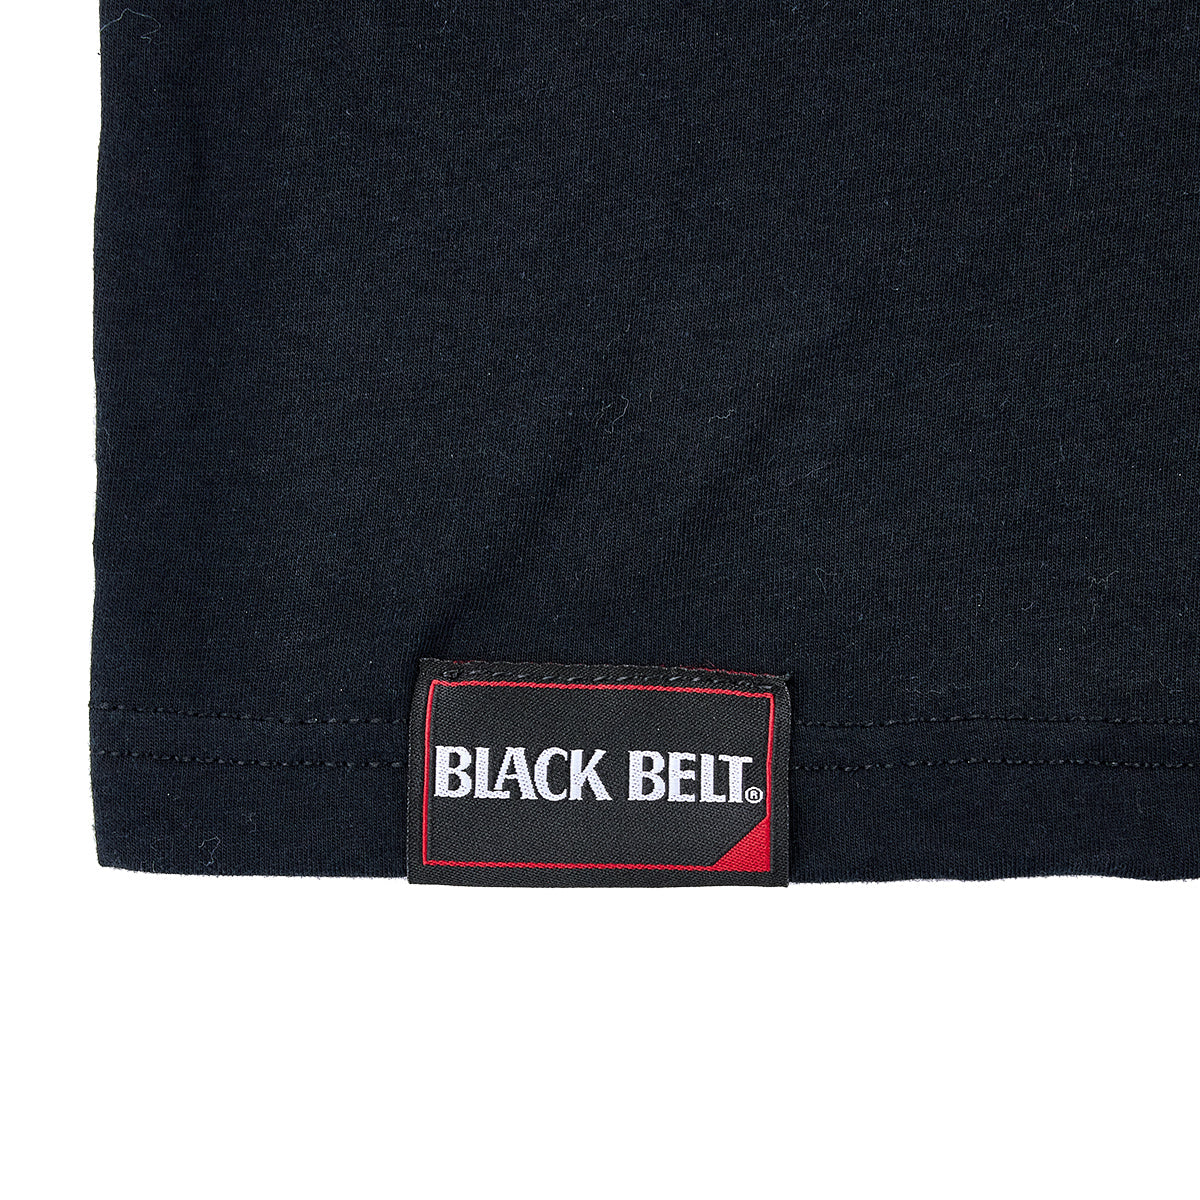 Black Belt Signature Tee